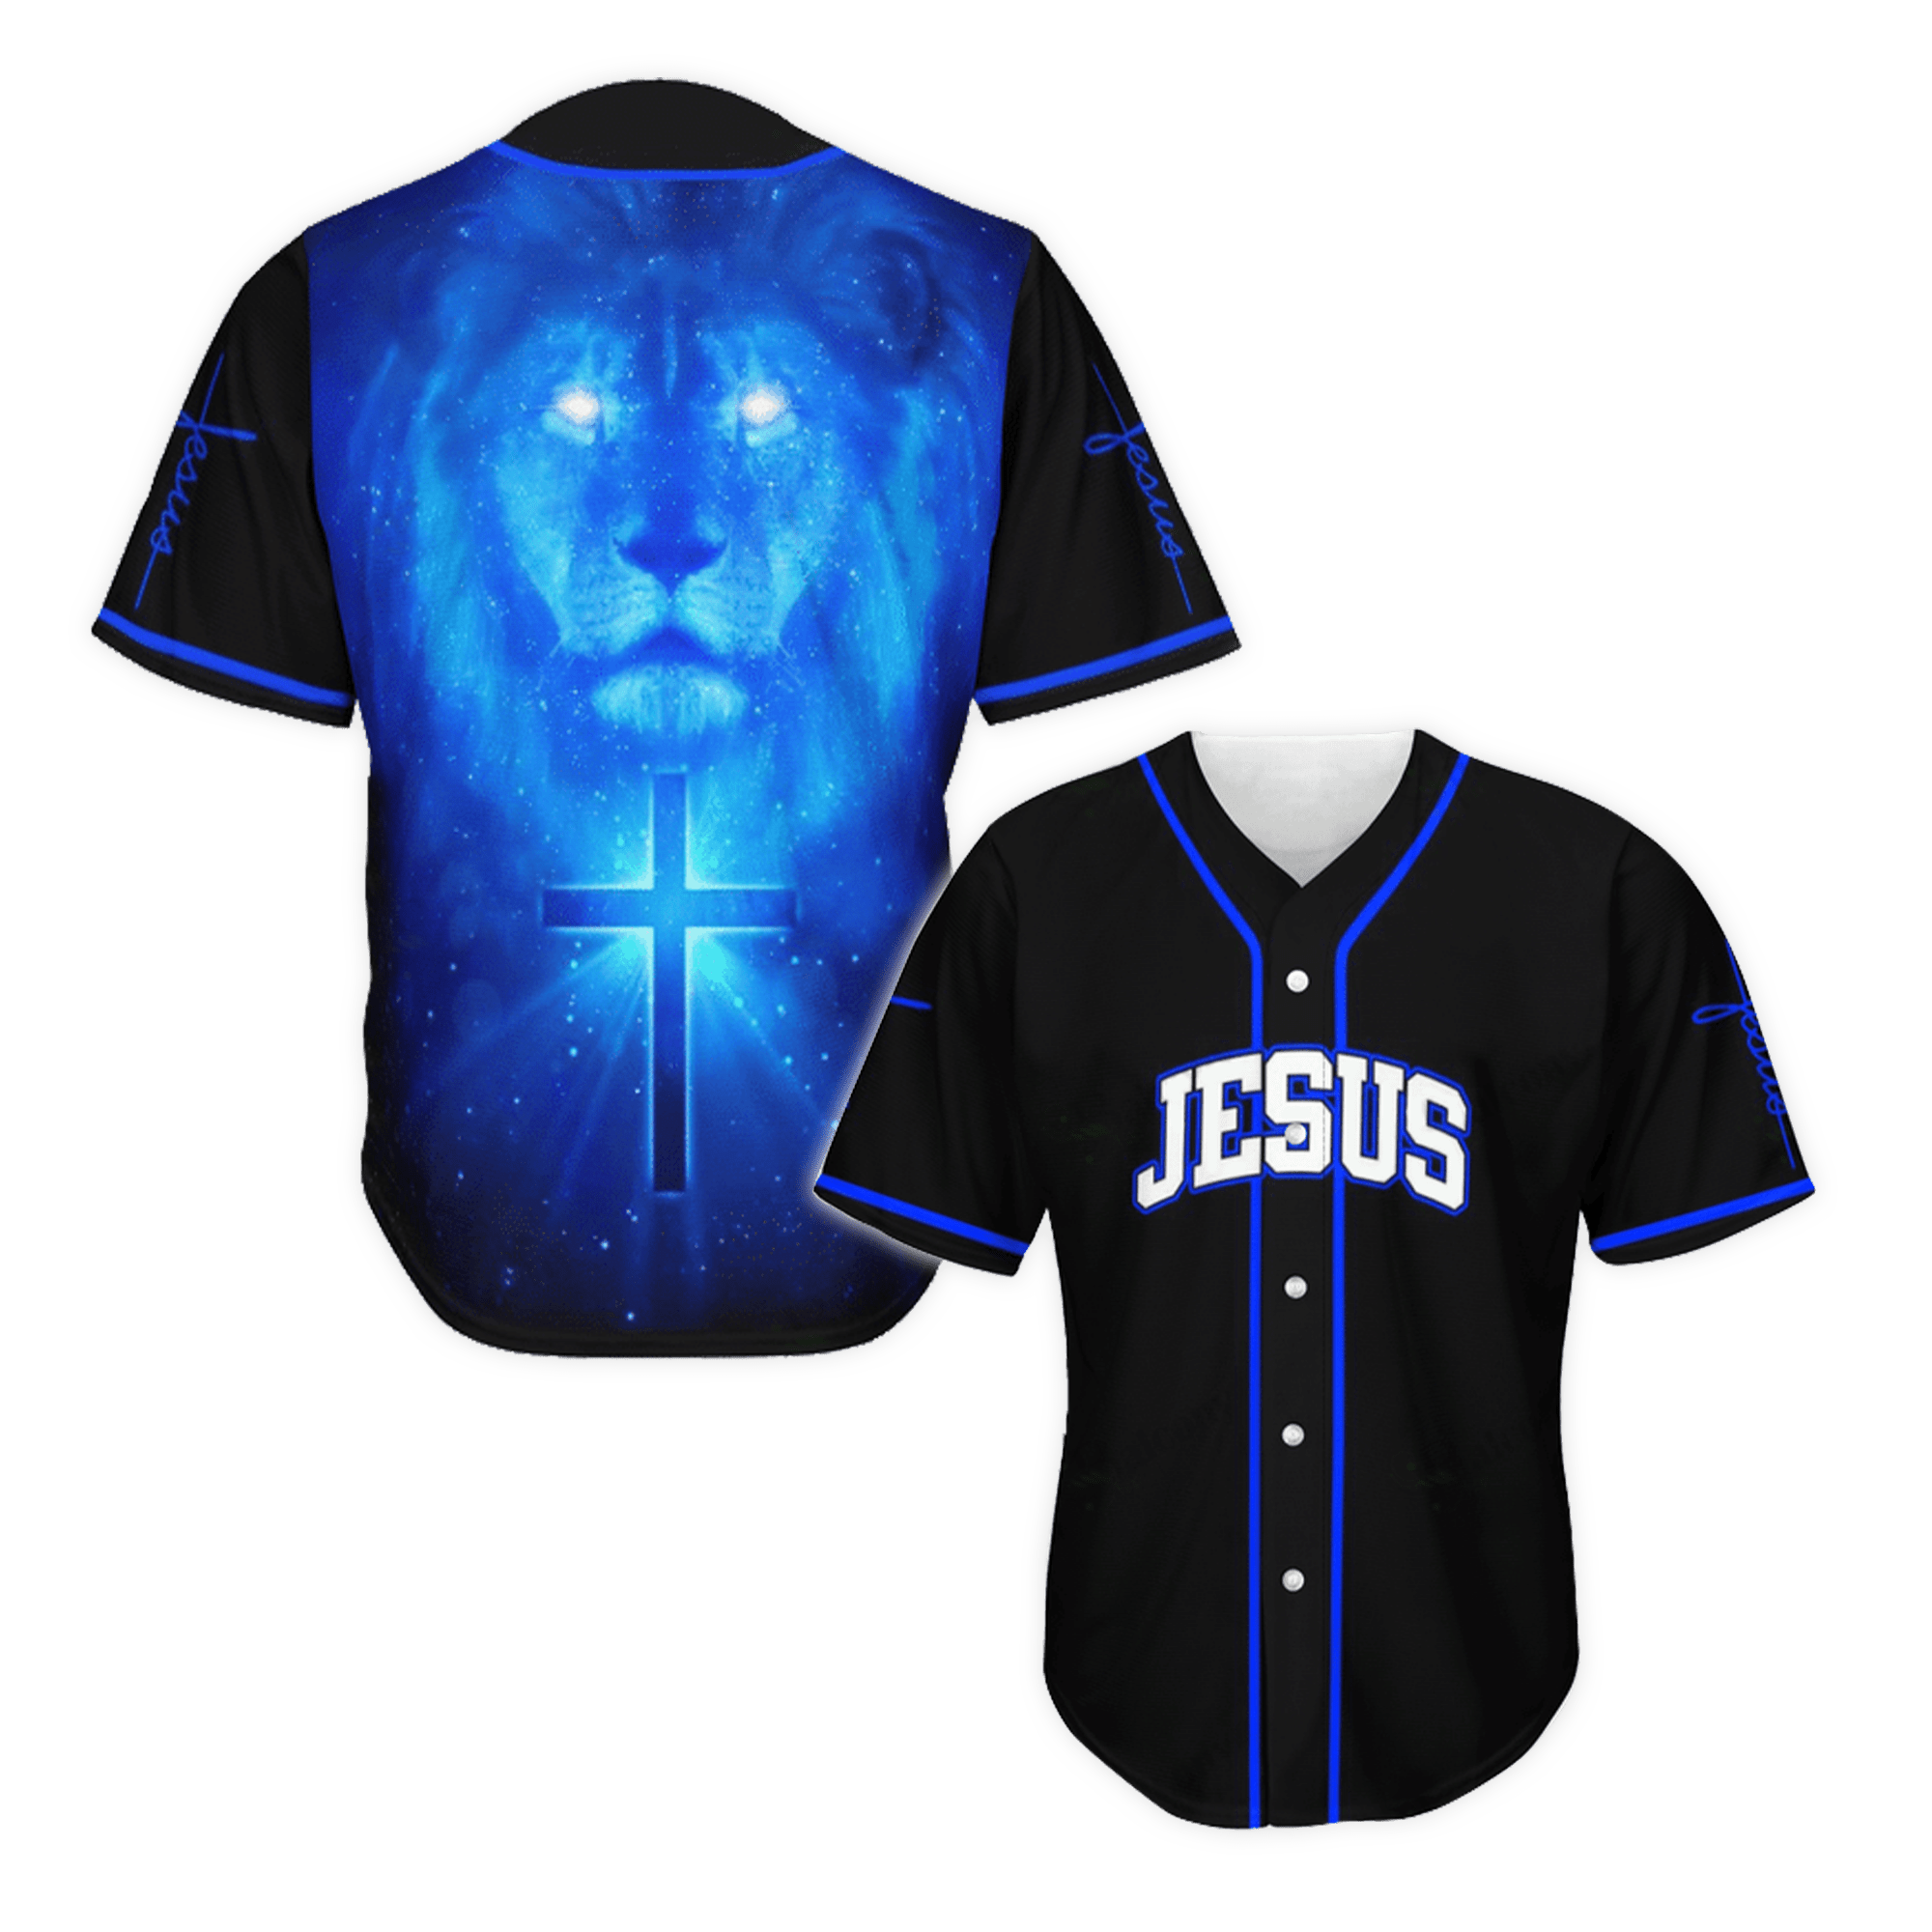 Tmarc Tee JESUS - THE LIGHT Baseball Tee